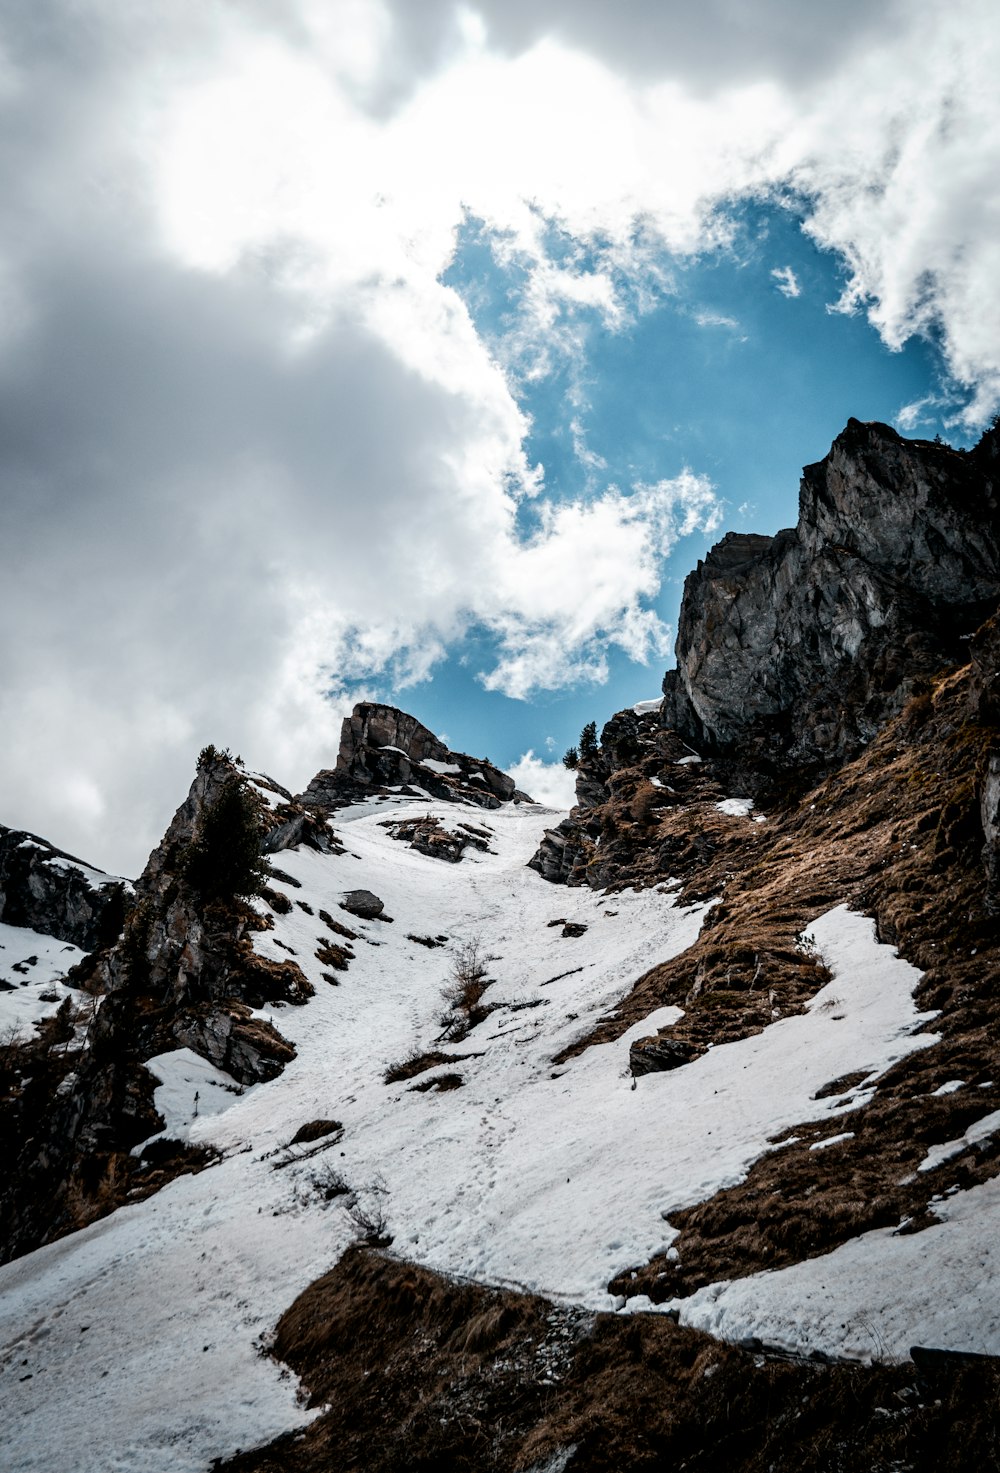 montanha coberta de neve sob céu azul e nuvens brancas durante o dia